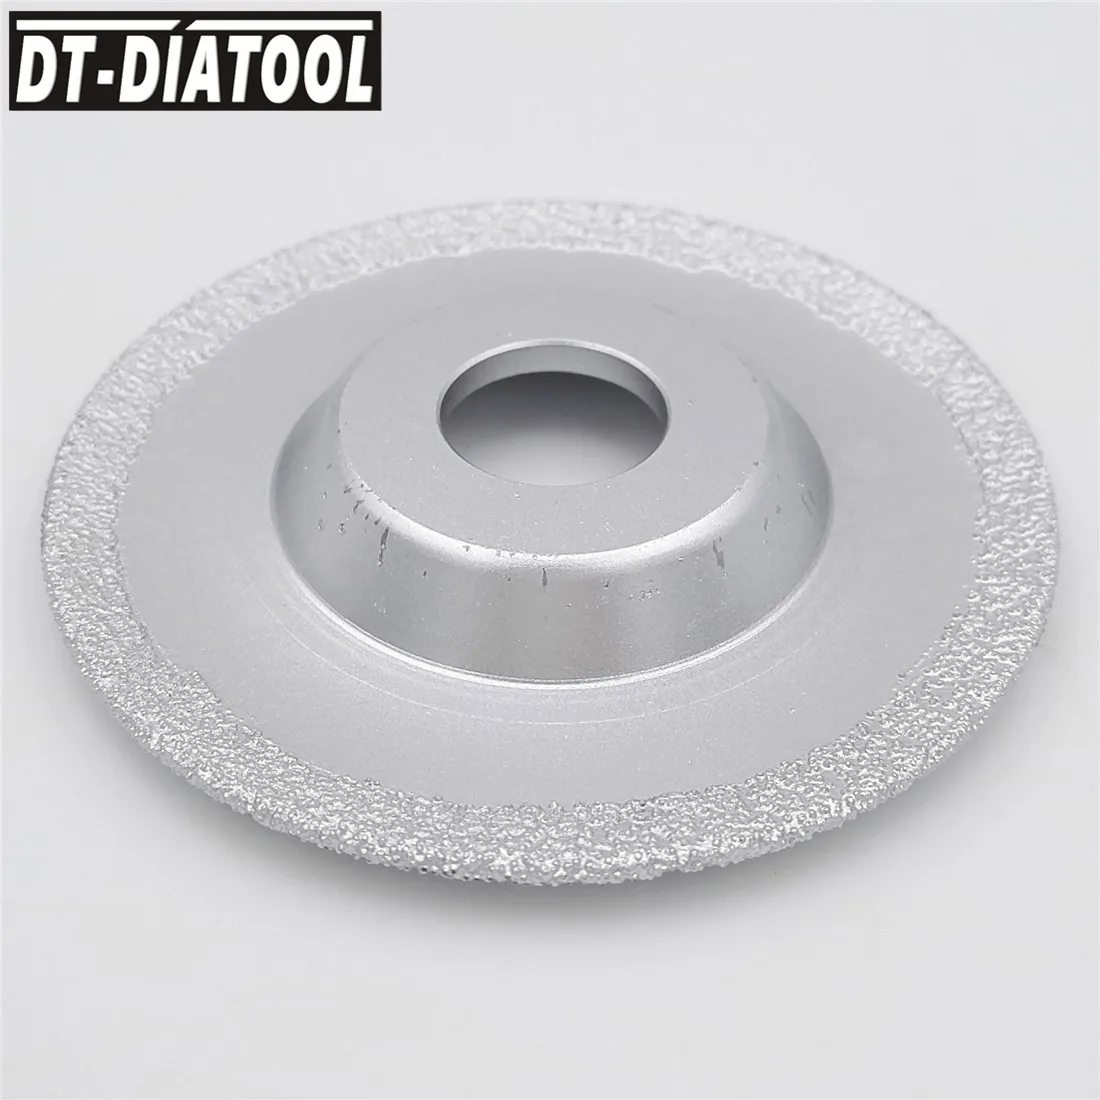 DT-DIATOOL Vakum Kaynaklı elmas taşlama diski Kuru veya ıslak Tüm taş ve inşaat malzemeleri için daha hızlı ve daha uzun ömür Görüntü 4